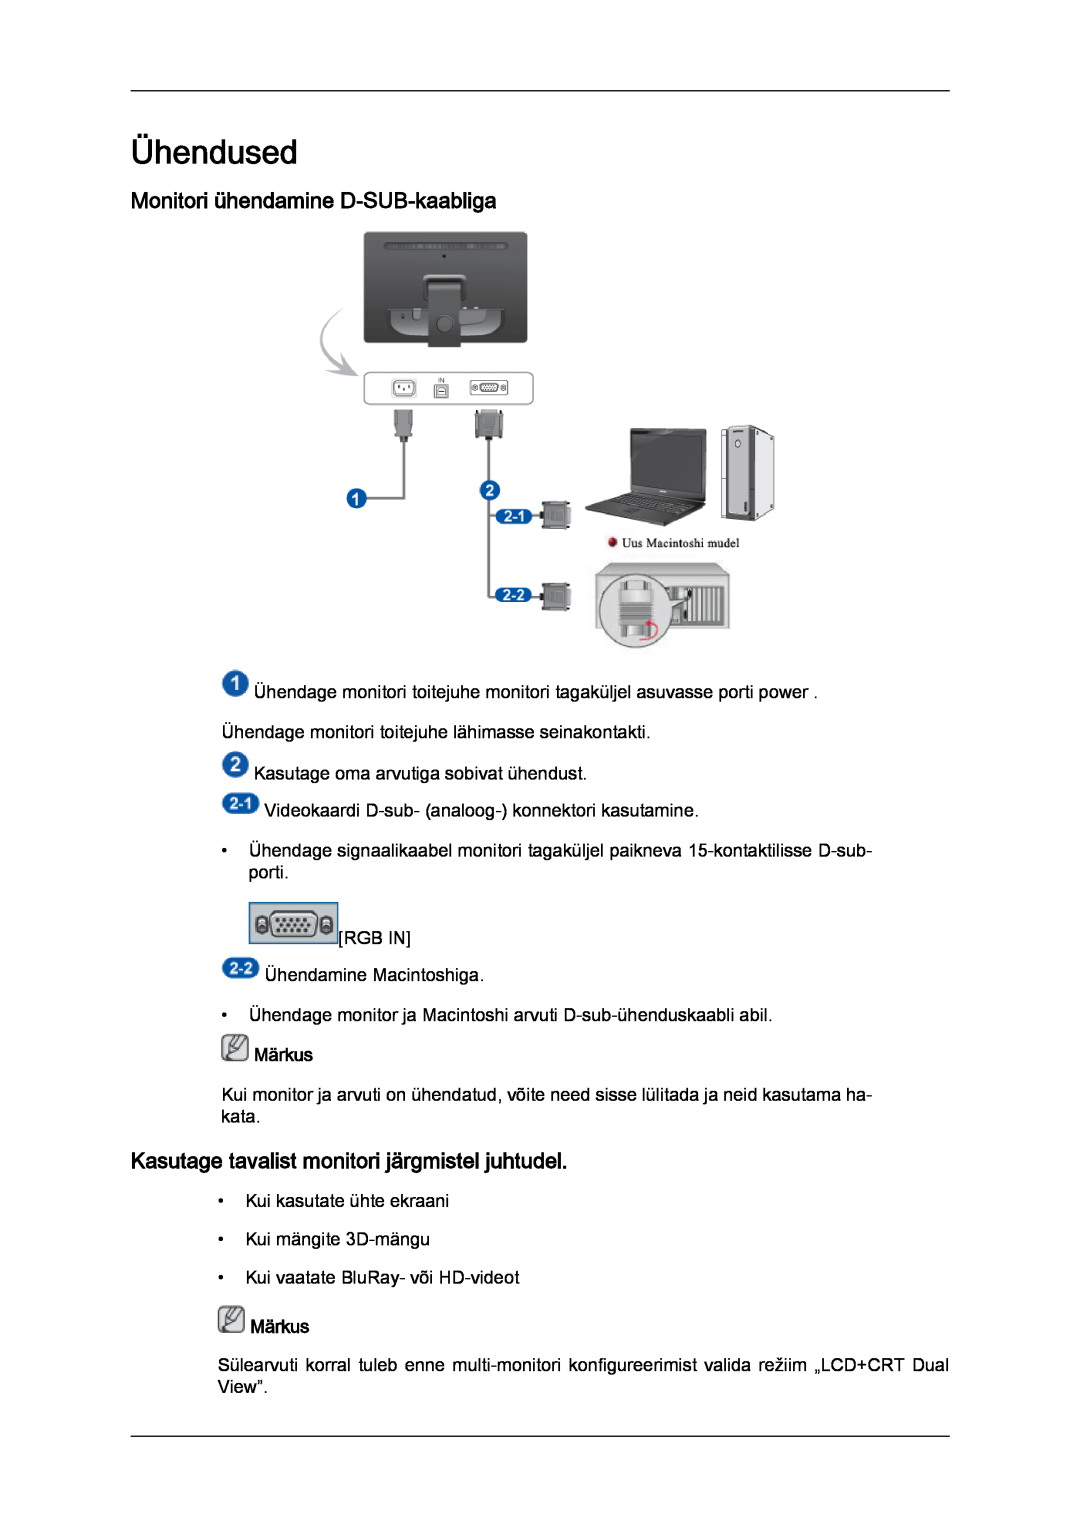 Samsung LS22LFUGFY/EN manual Ühendused, Monitori ühendamine D-SUB-kaabliga, Kasutage tavalist monitori järgmistel juhtudel 